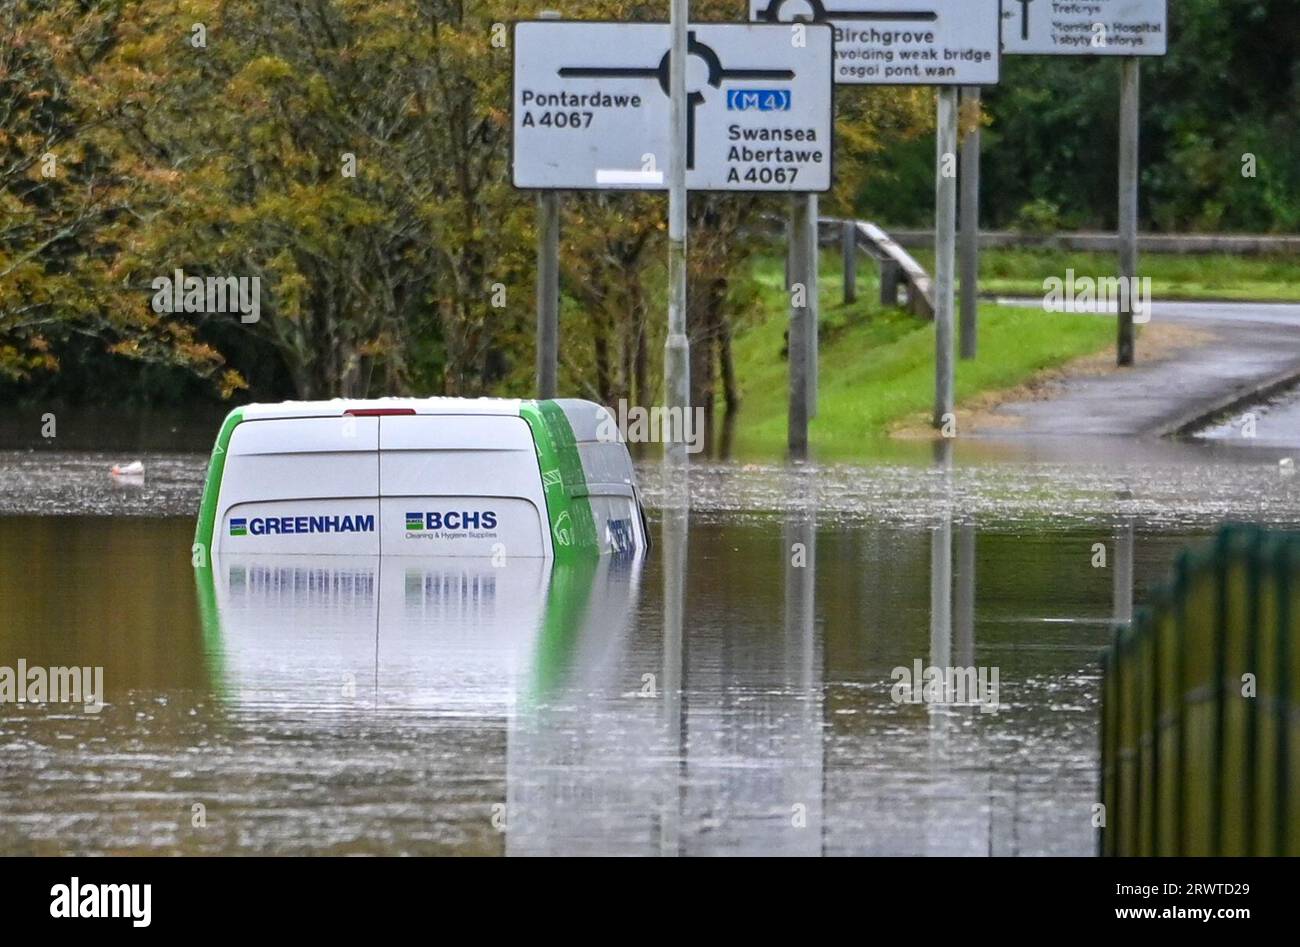 La police a fermé les routes autour du club de golf de Mond Valley près de Swansea après que de fortes pluies dans la région ont causé des inondations. Un conducteur de camionnette a été laissé coincé après avoir essayé de traverser l'eau. Banque D'Images